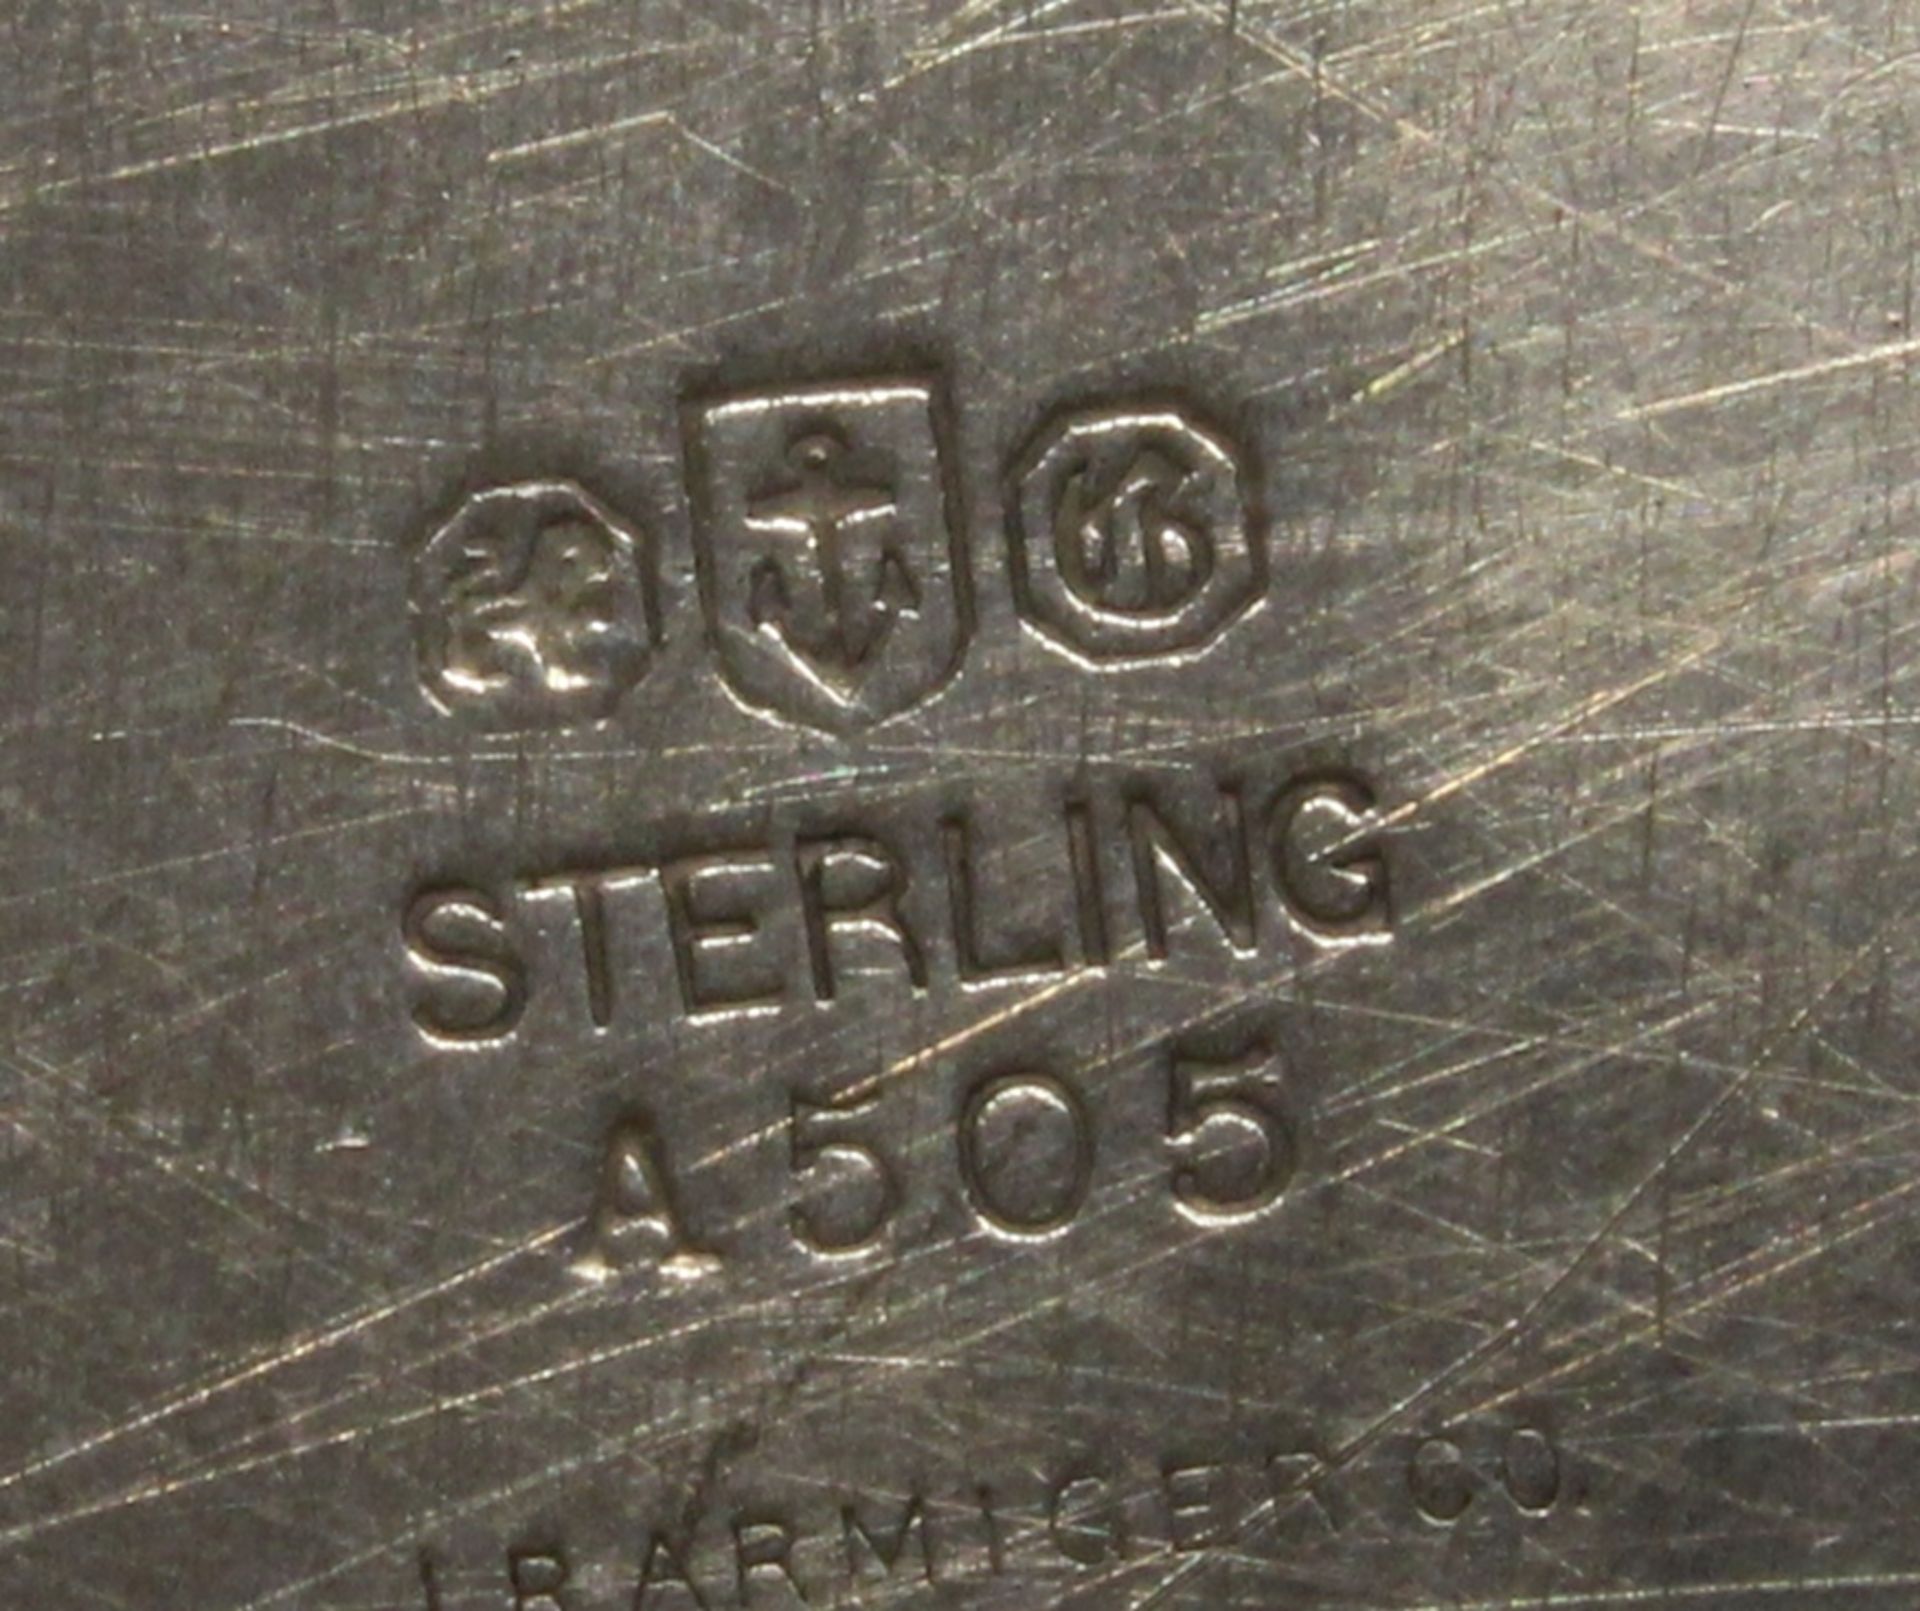 12 Teller, Silber 925, Gorham, Perlrand, Spiegel je graviert mit ligiertem Monogramm, ø 15.2 cm, zu - Bild 3 aus 3